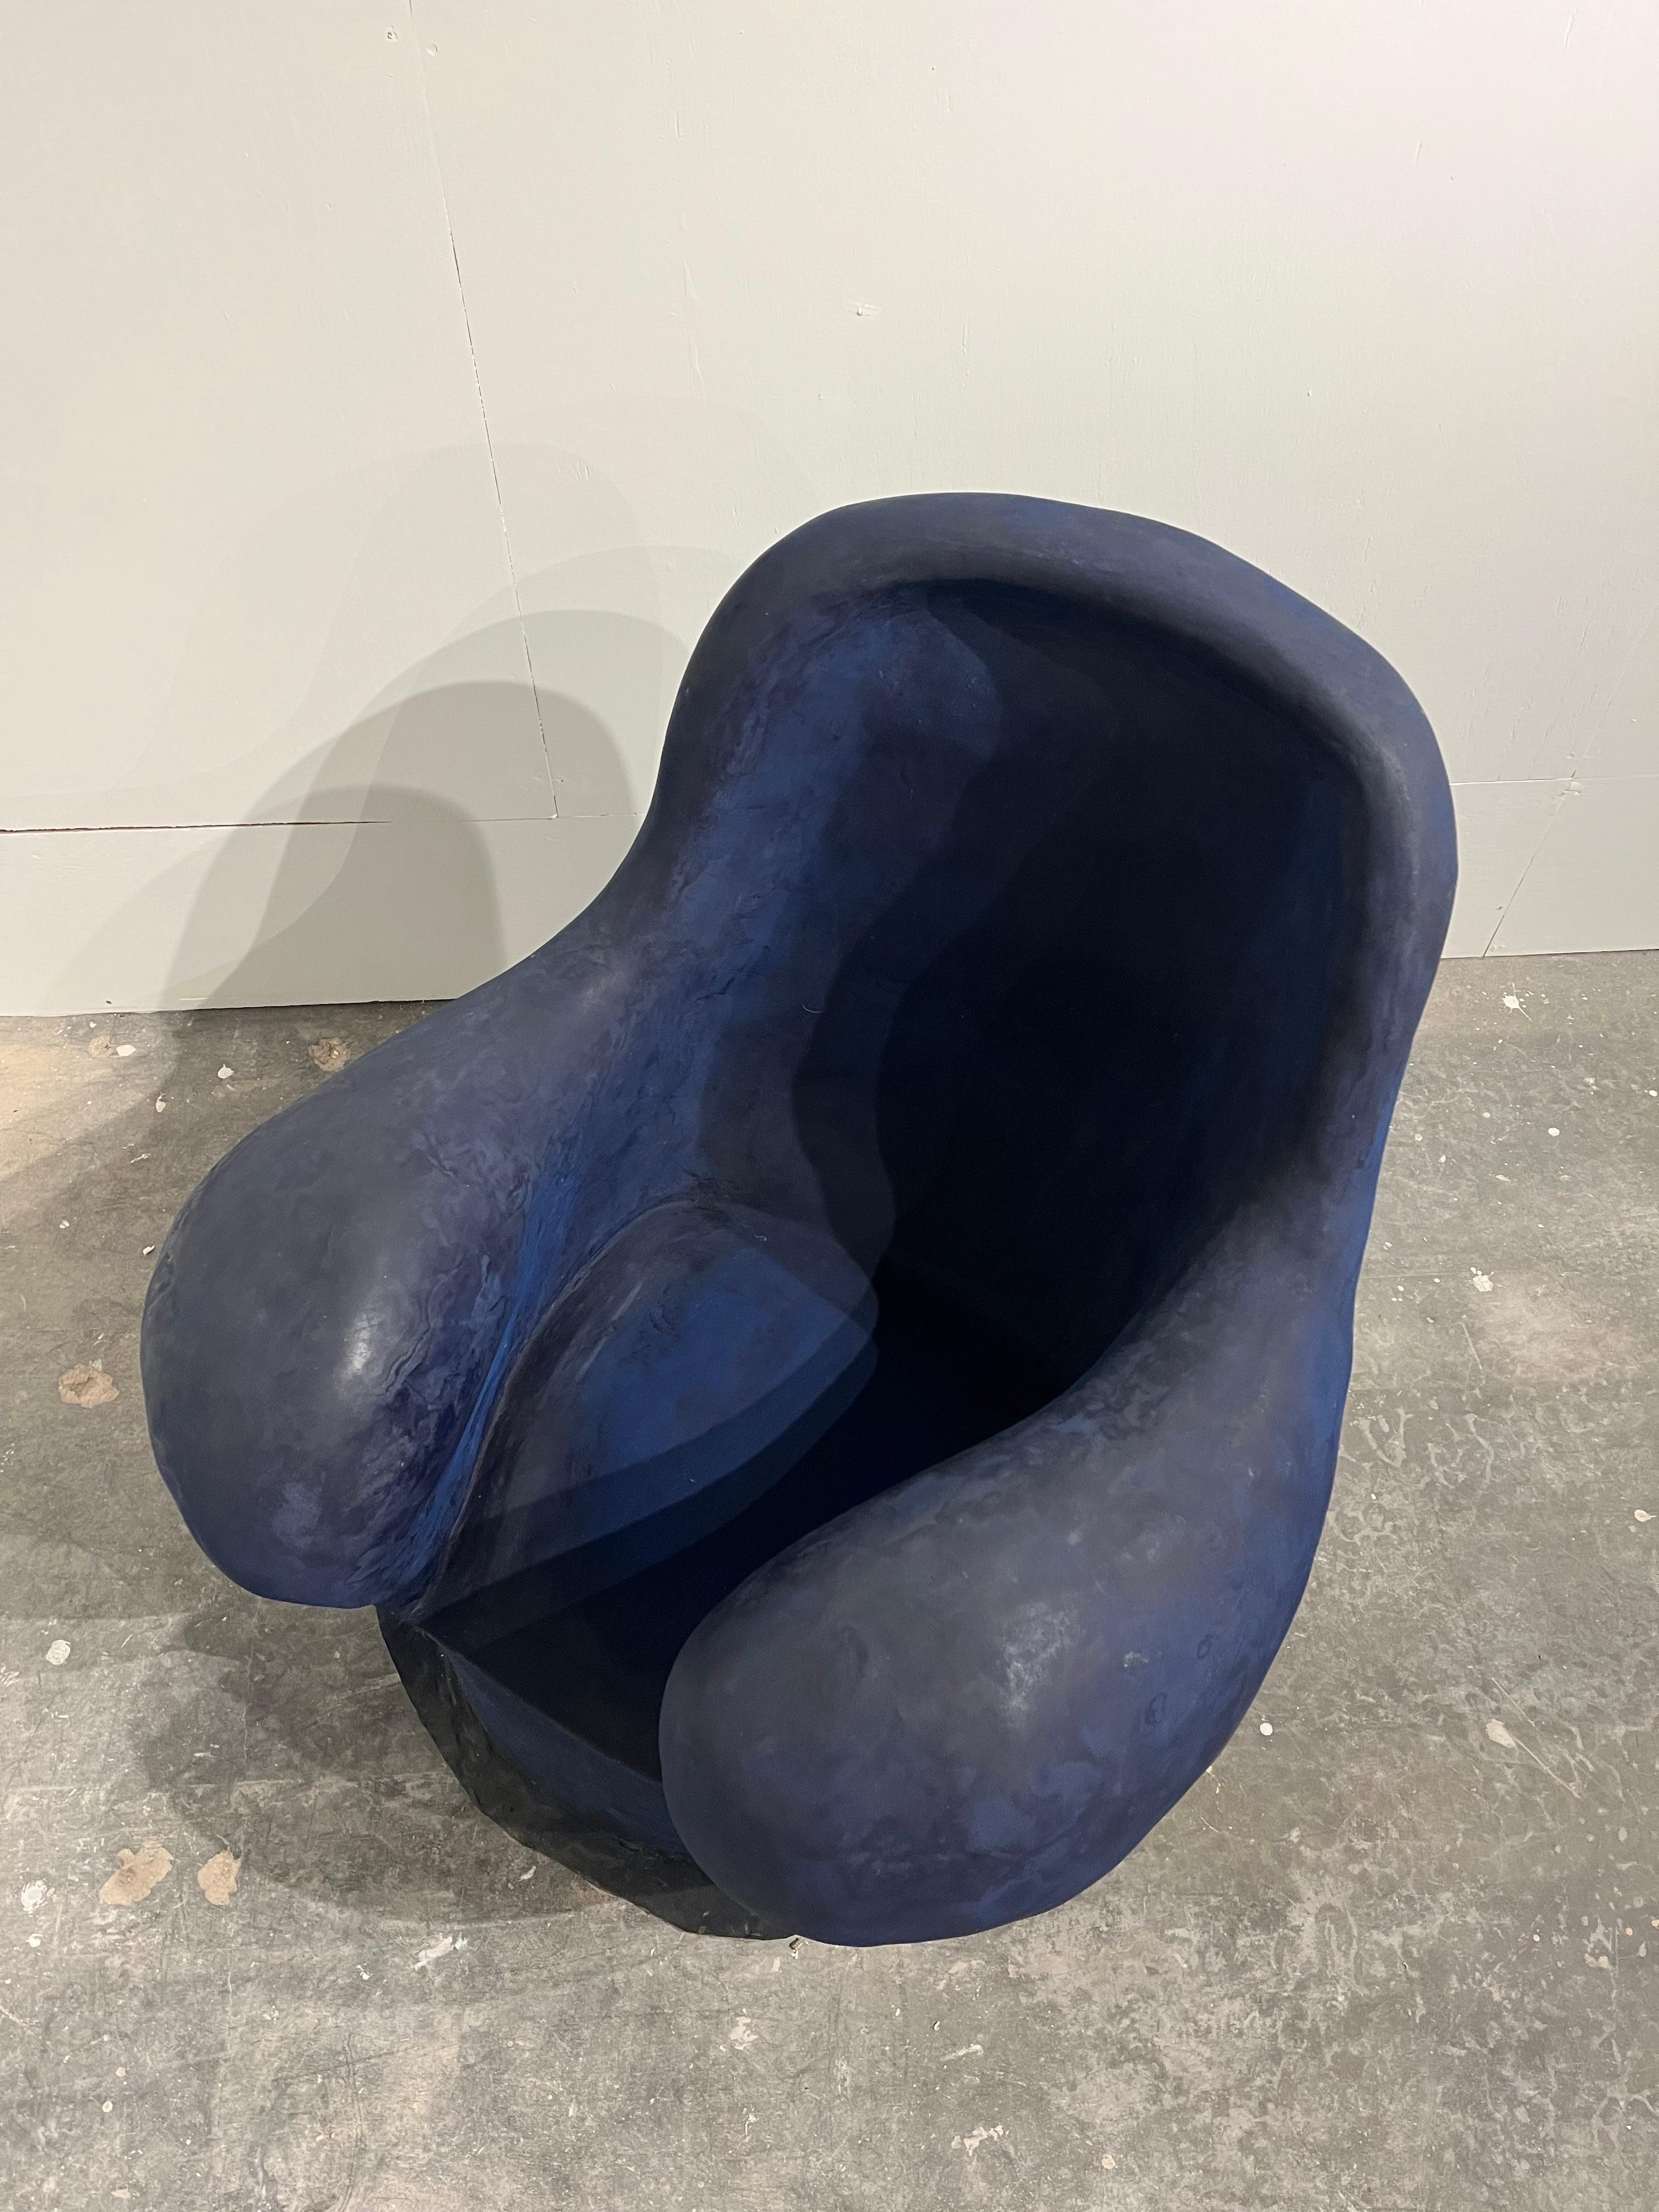 Louis Durot French Post War Contemporary Artist Blue Polymer Armchair Sculpture 2